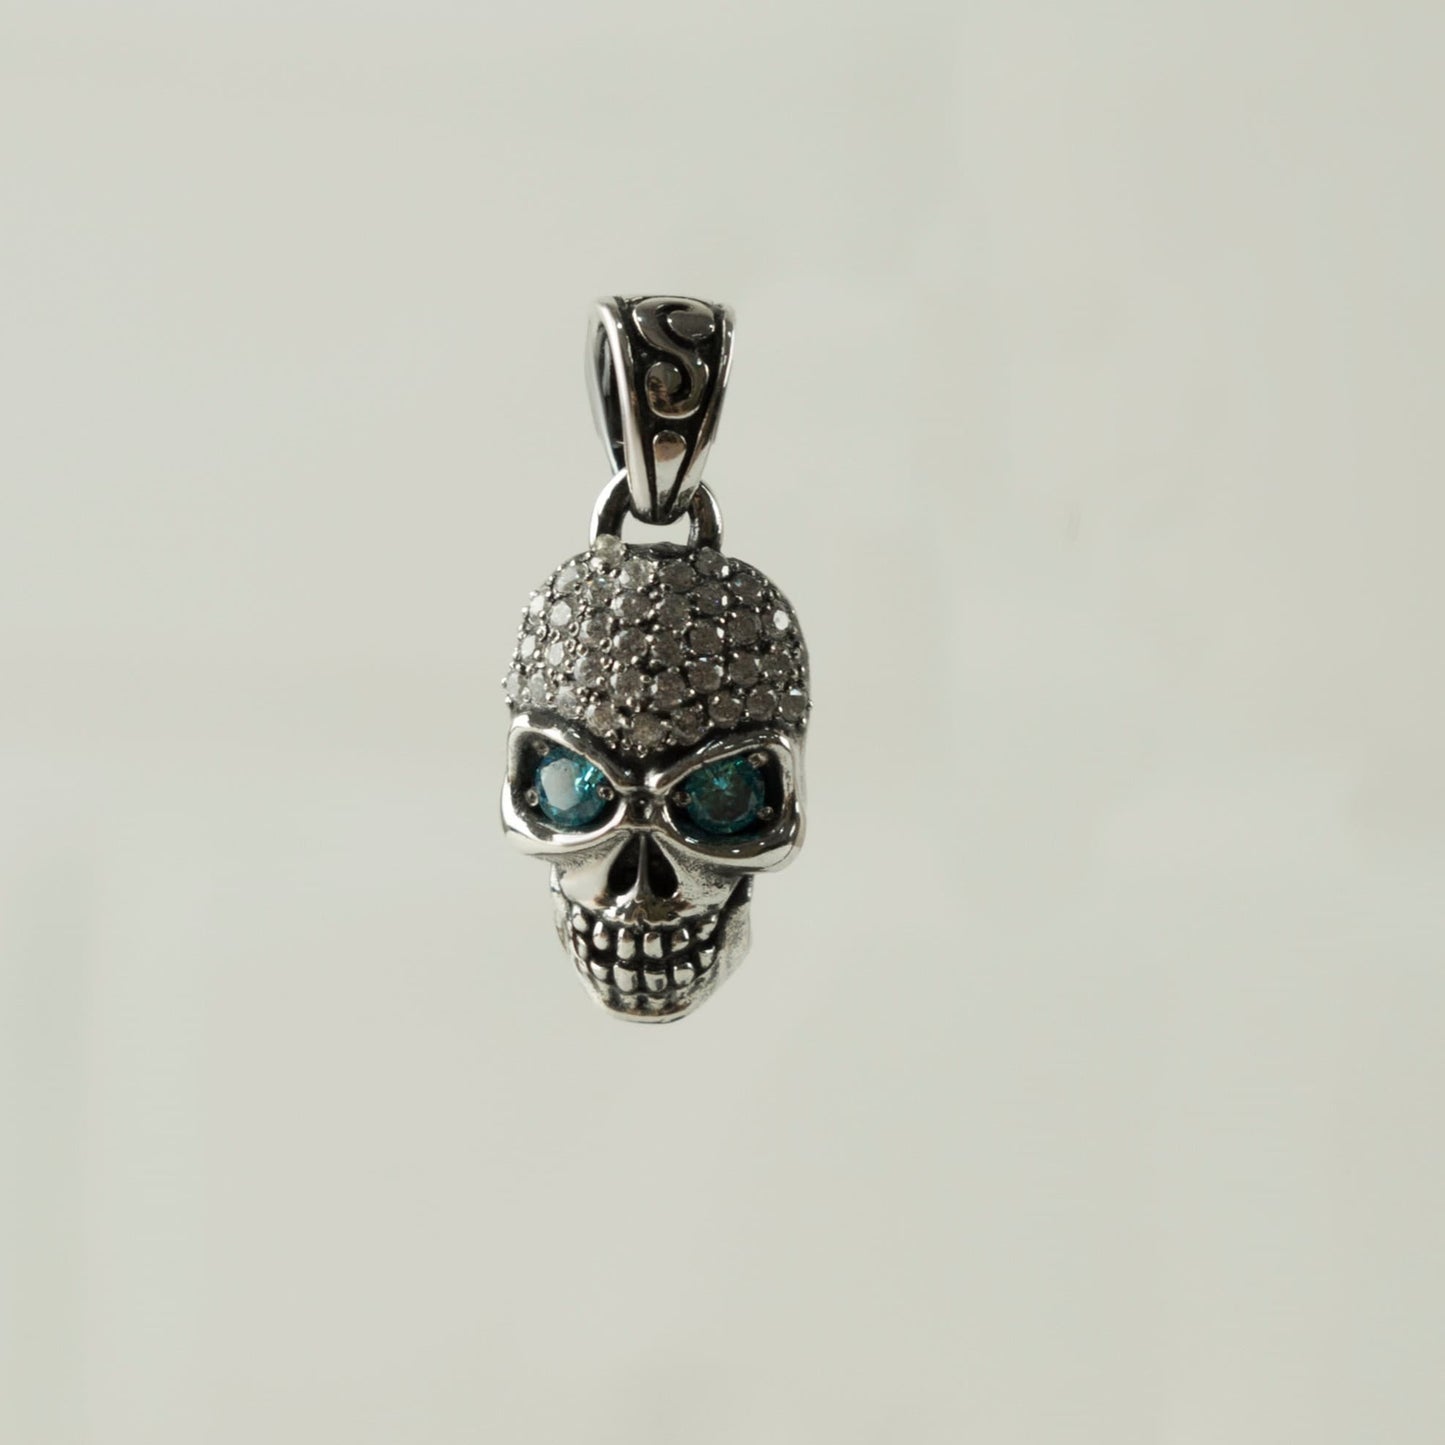 Diamond skull pendant Skull pendant CZ  Women's skull pendant